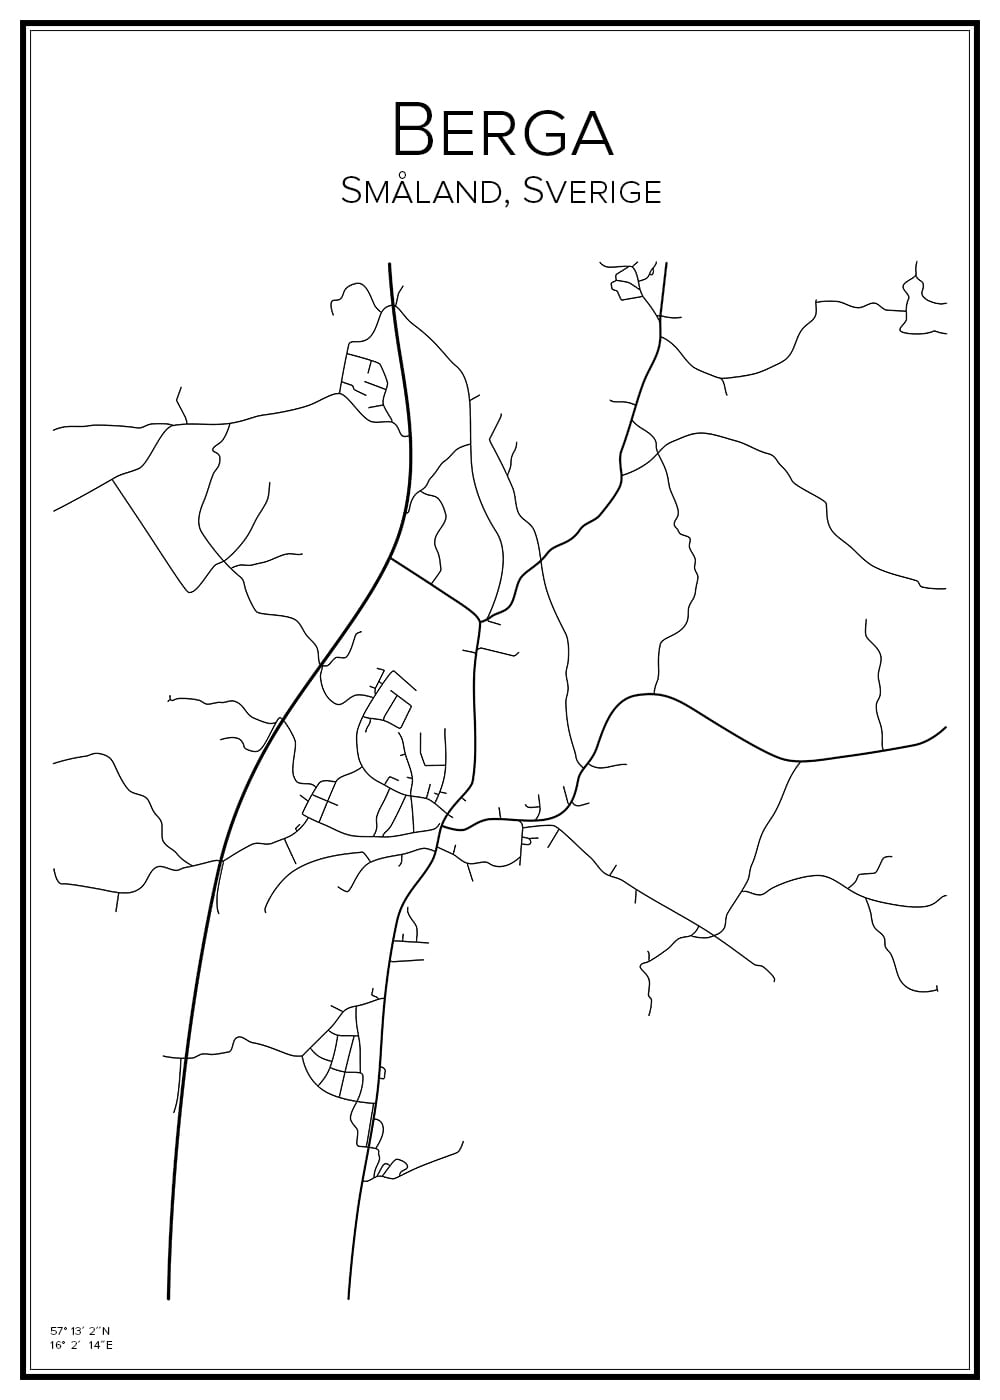 Stadskarta över Berga